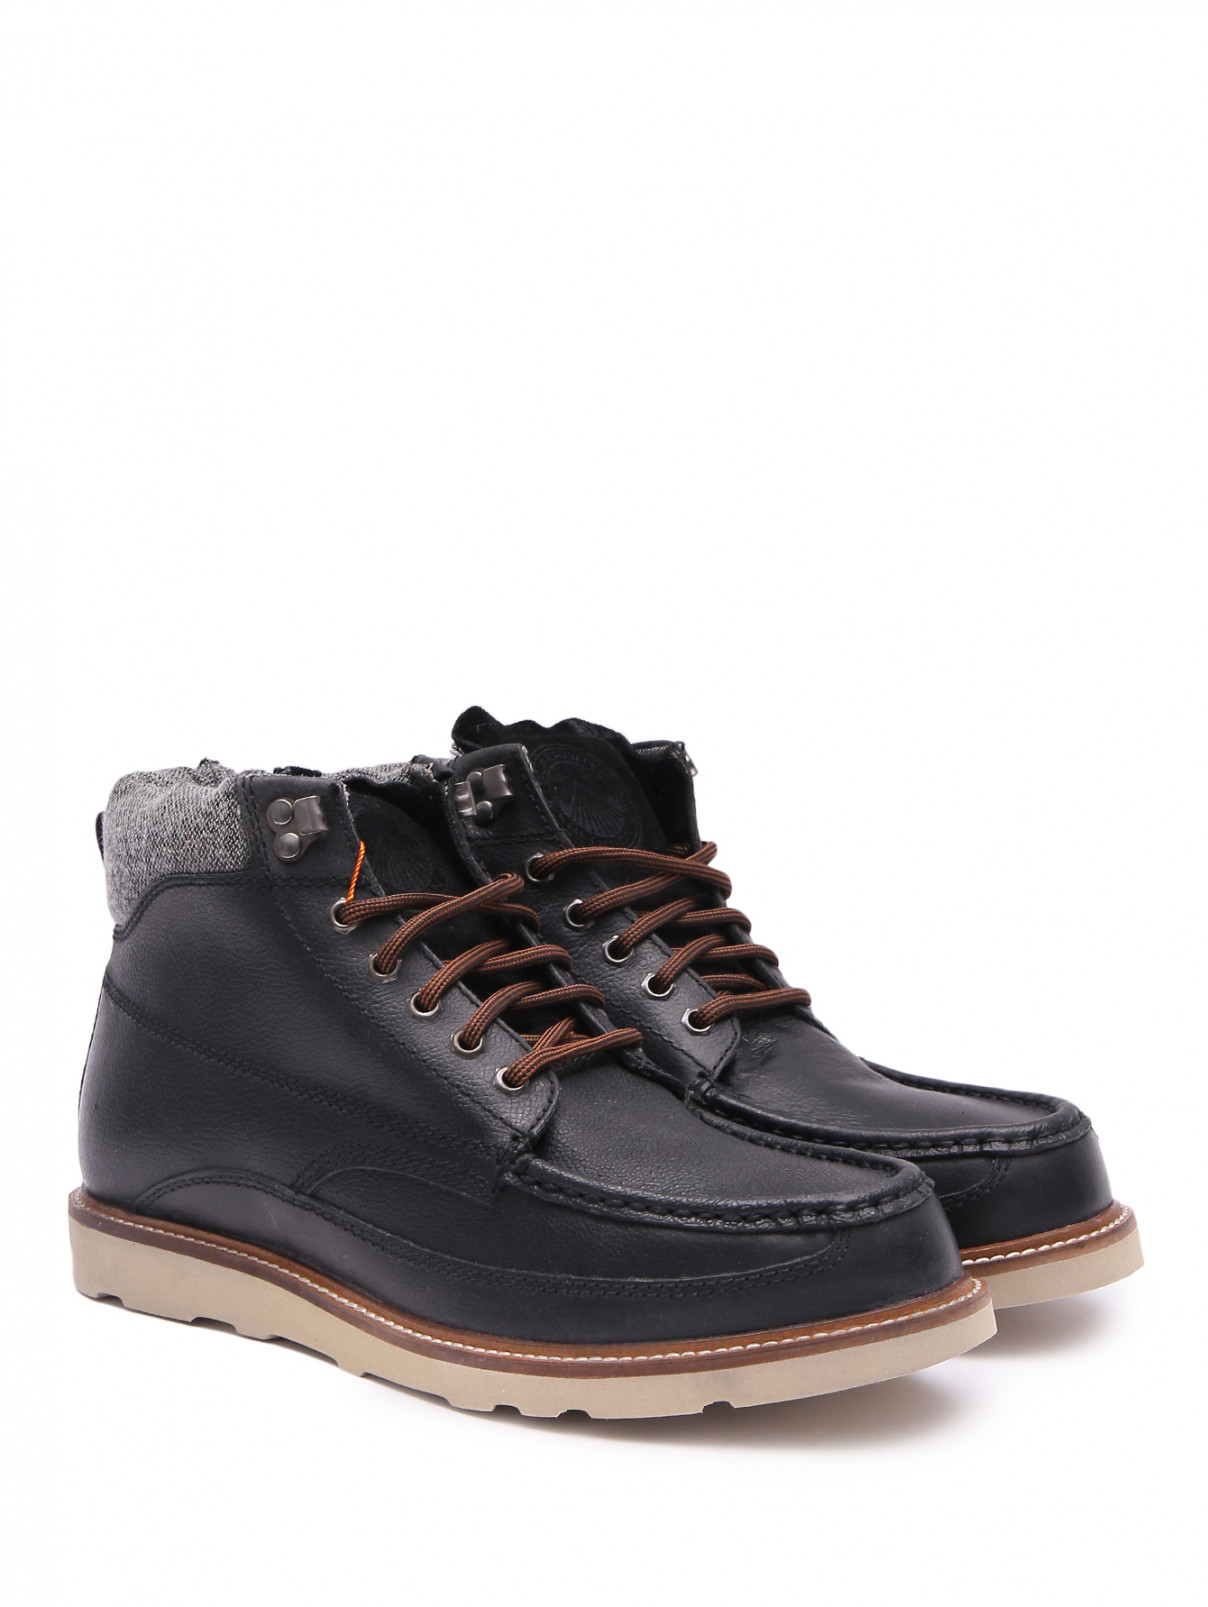 Комбинированные ботинки из кожи SuperDry  –  Общий вид  – Цвет:  Черный